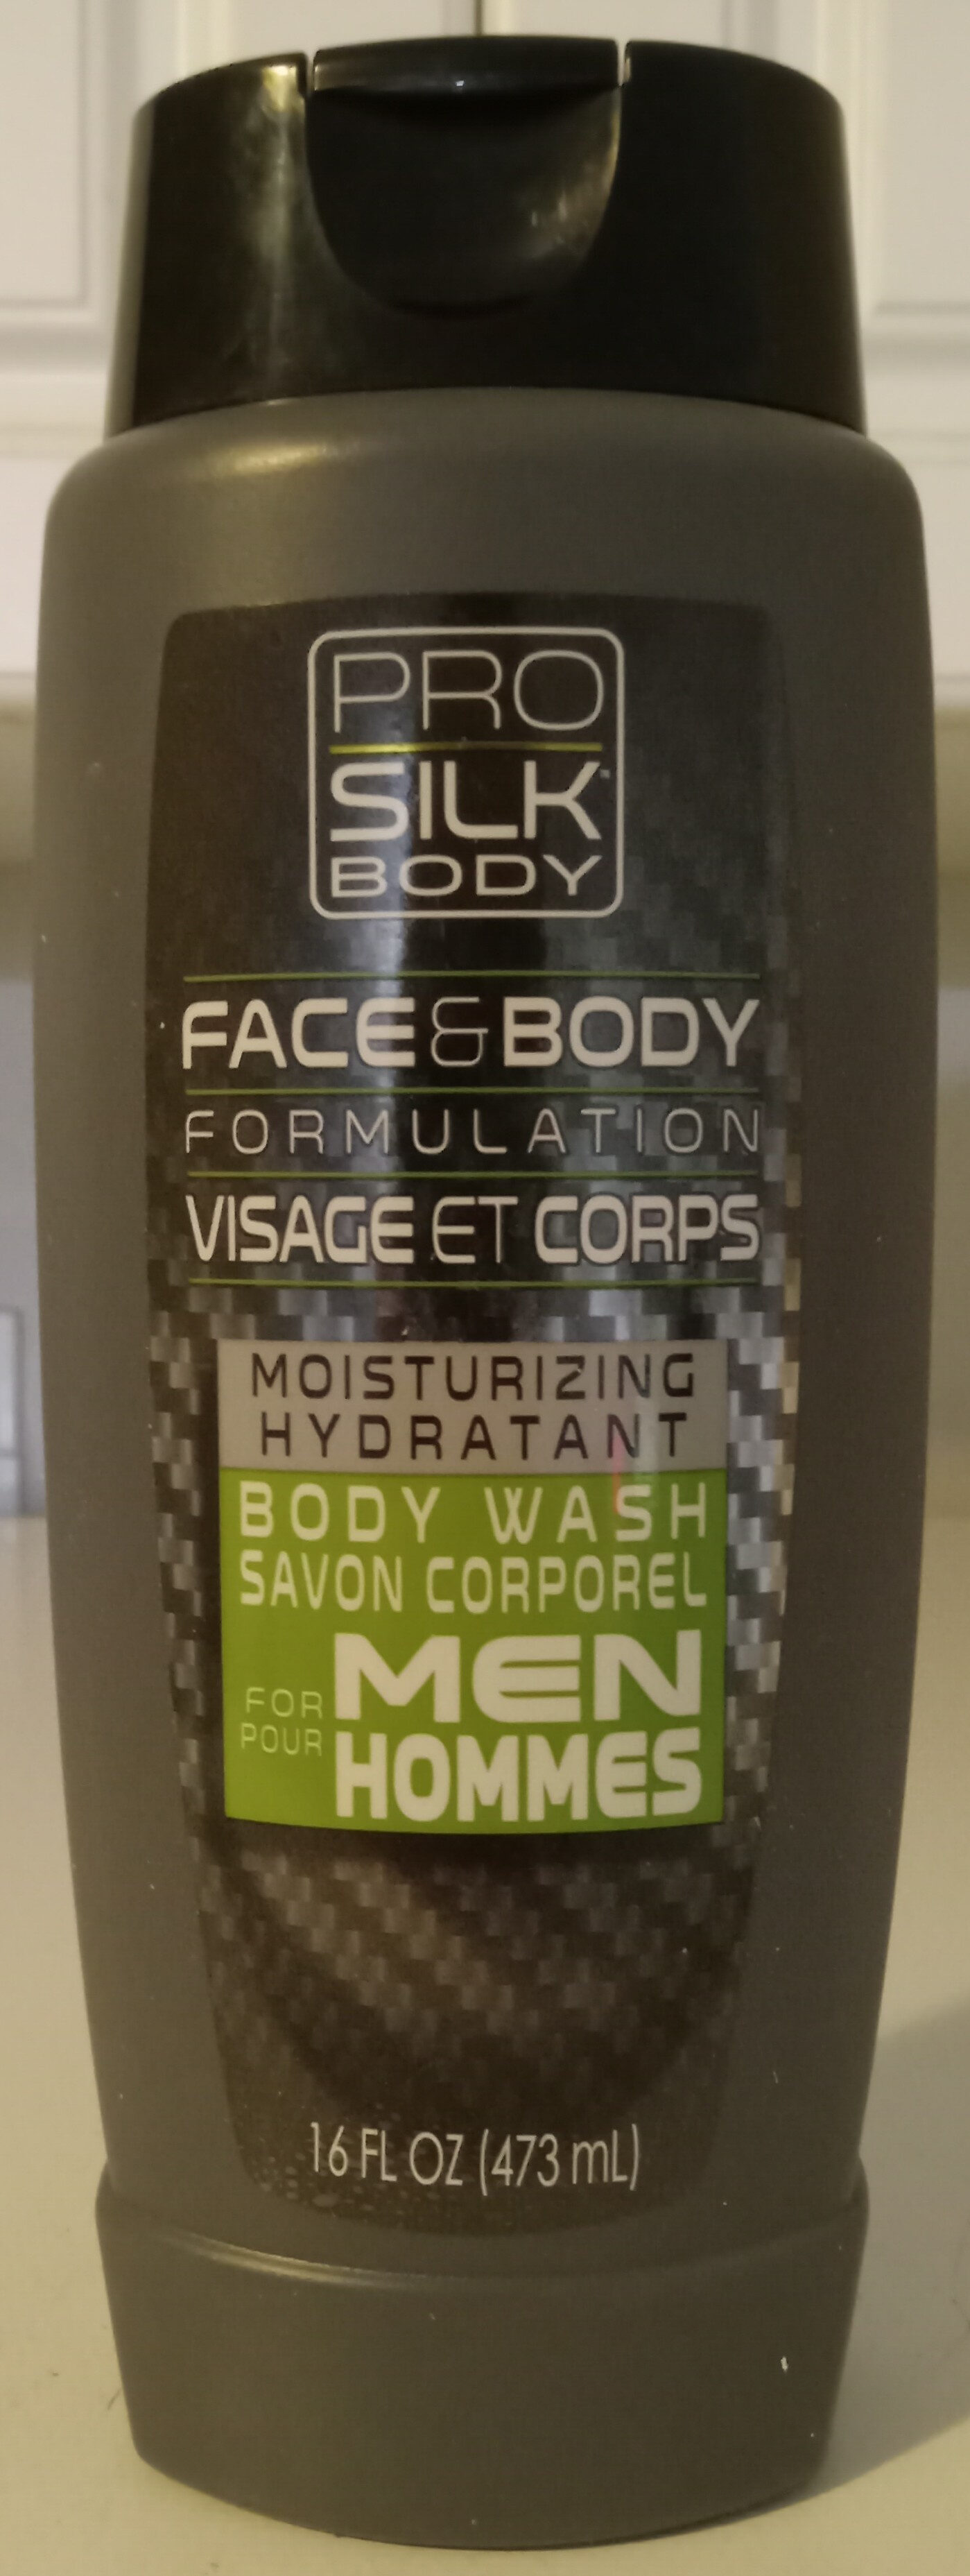 Face & Body Formulation Moisturizing Body Wash for Men - Produkt - en